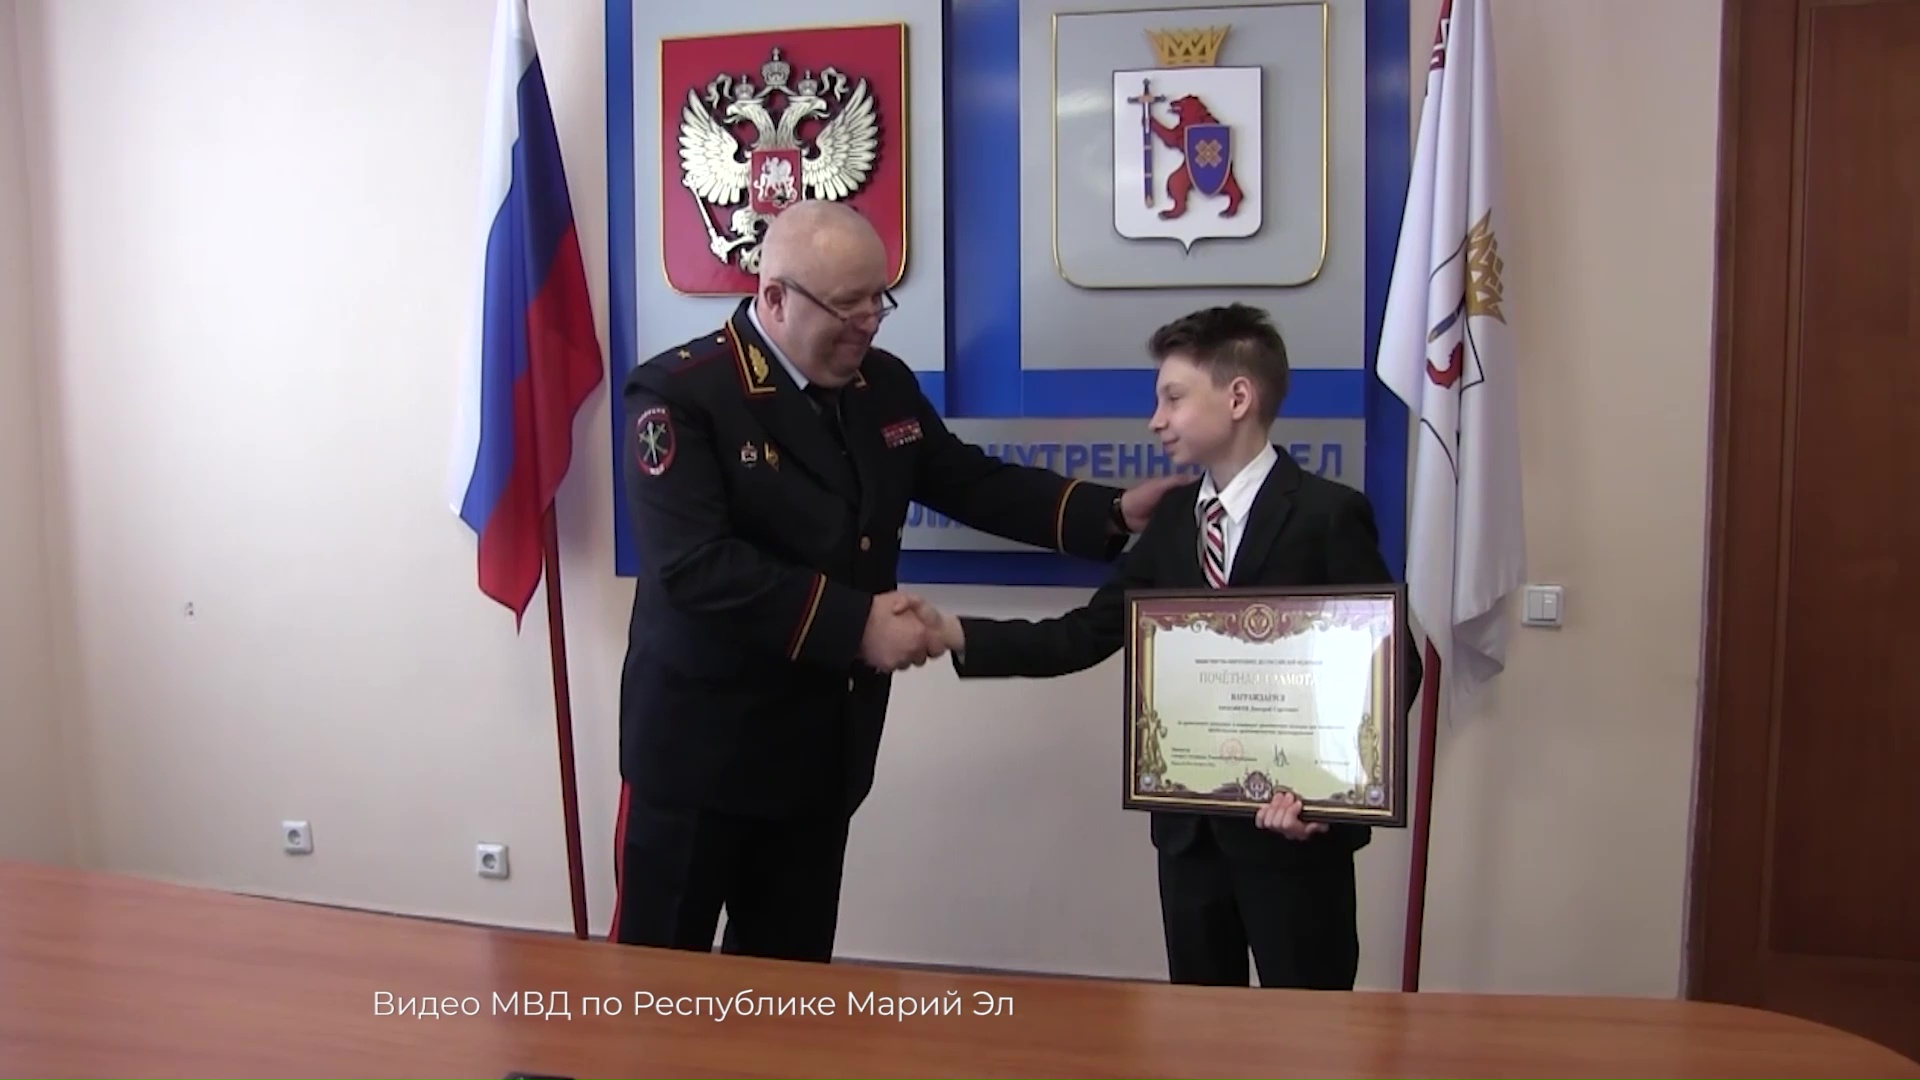 Подросток из Марий Эл получил награду Министерства внутренних дел России за героизм